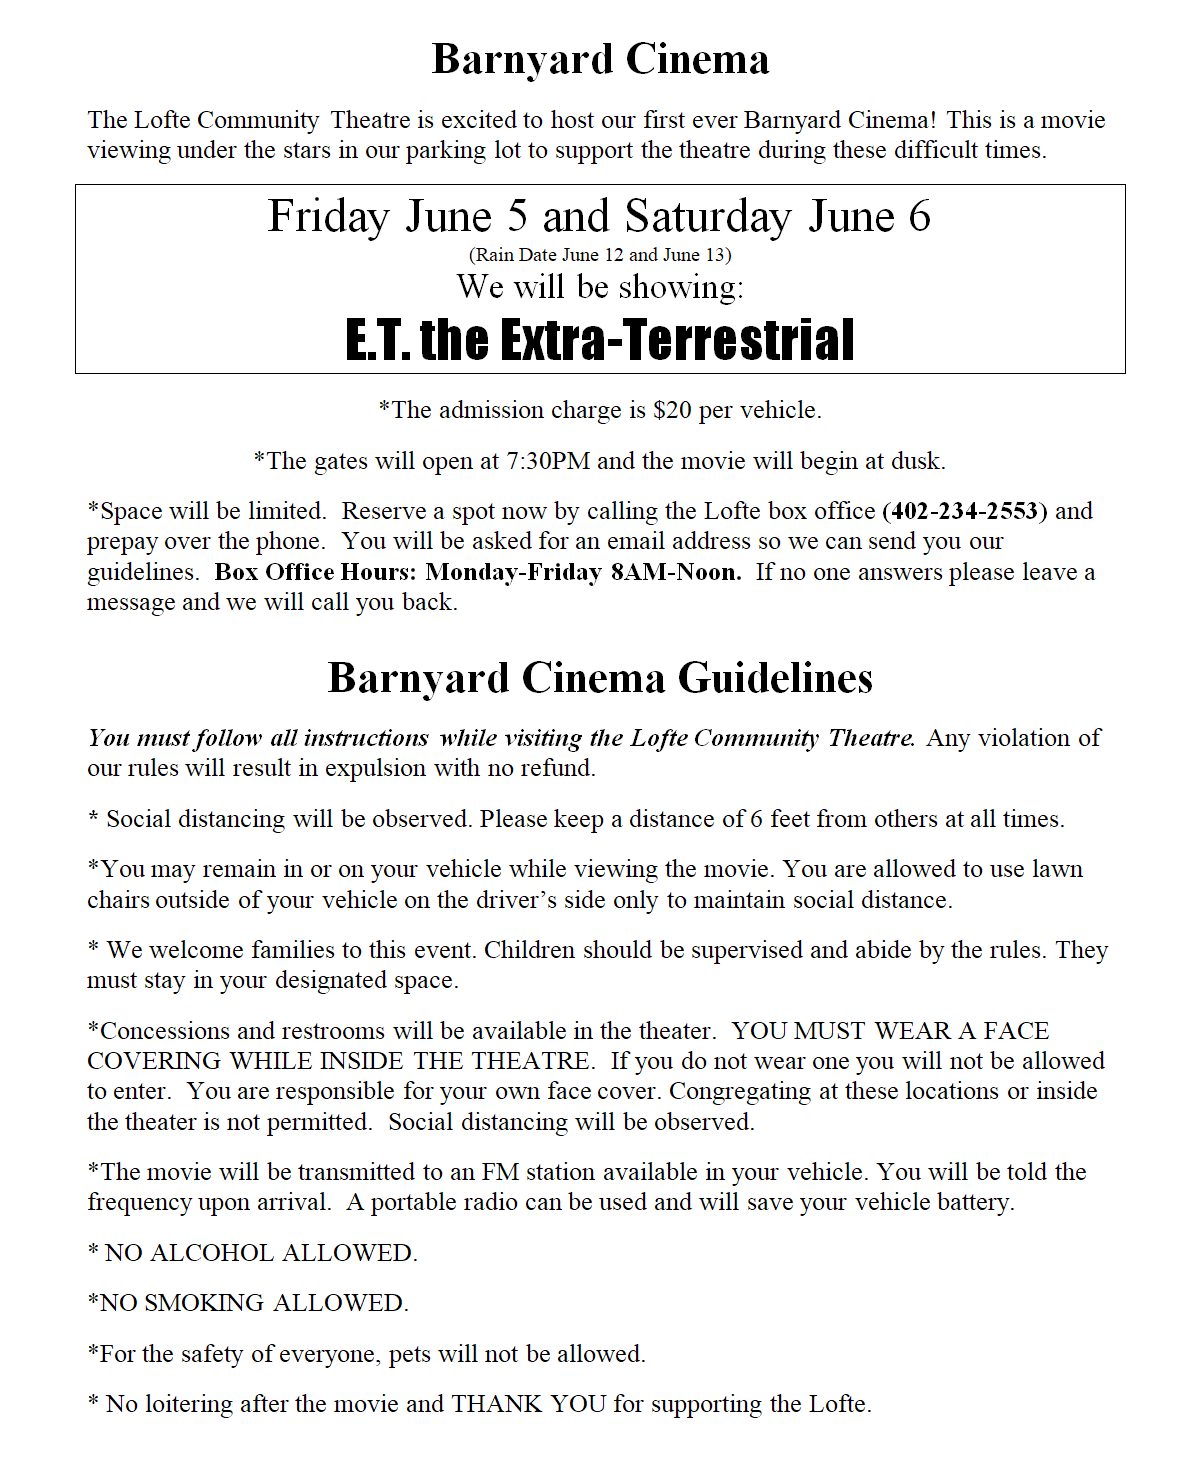 Barnyard Cinema Guidelines